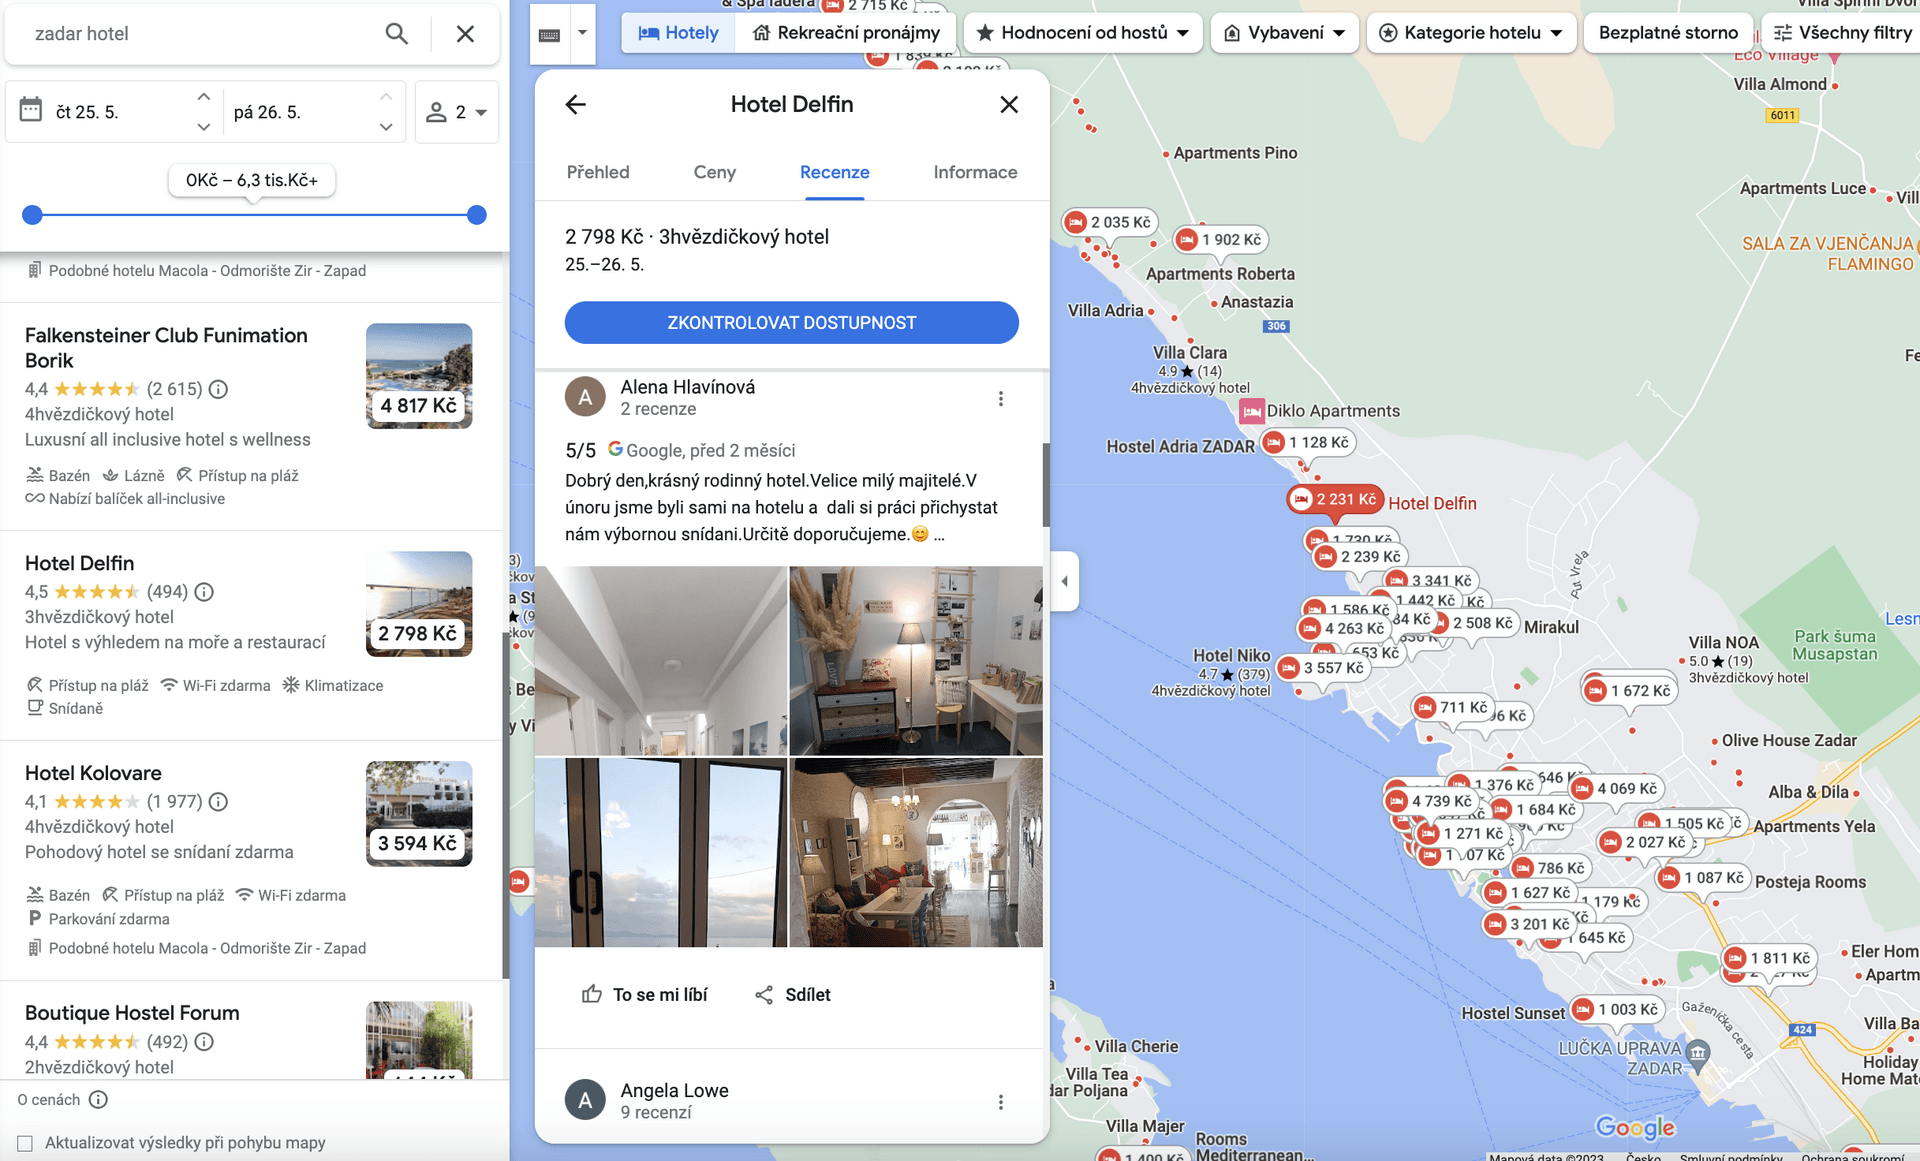 Ubytování na Google mapách